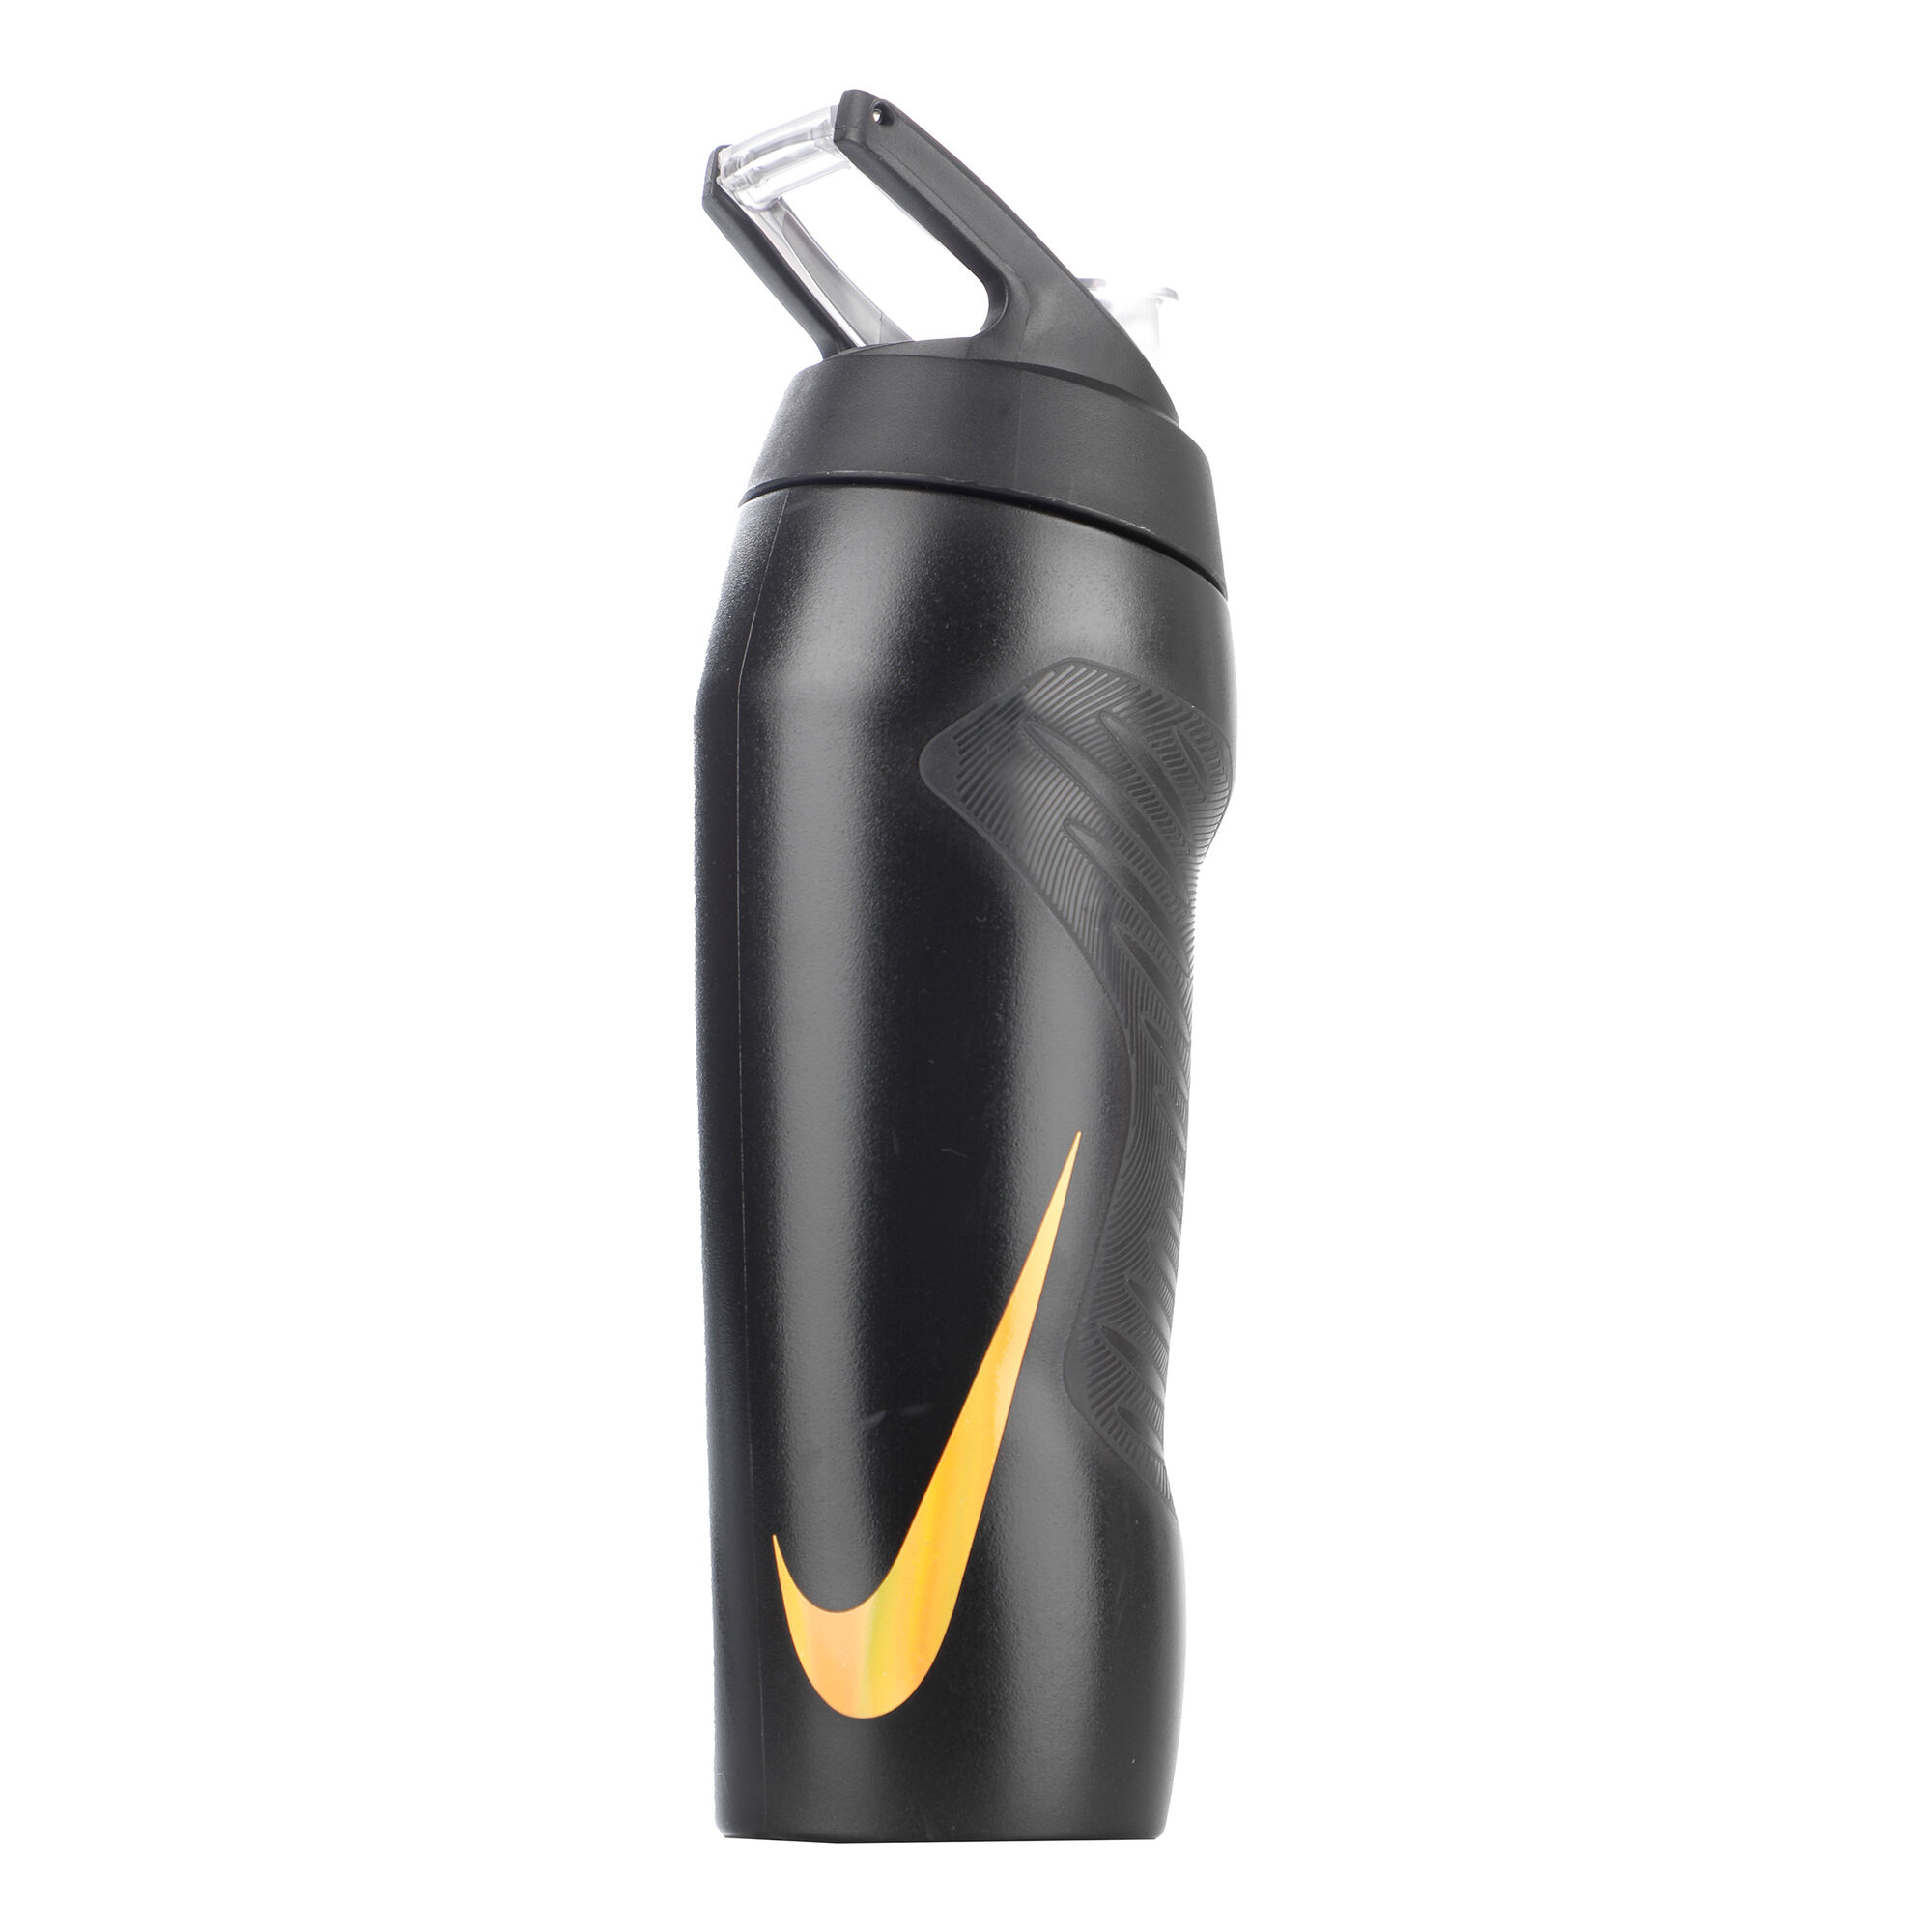 Nike Hyperfuel 24 oz Water Bottle Clear